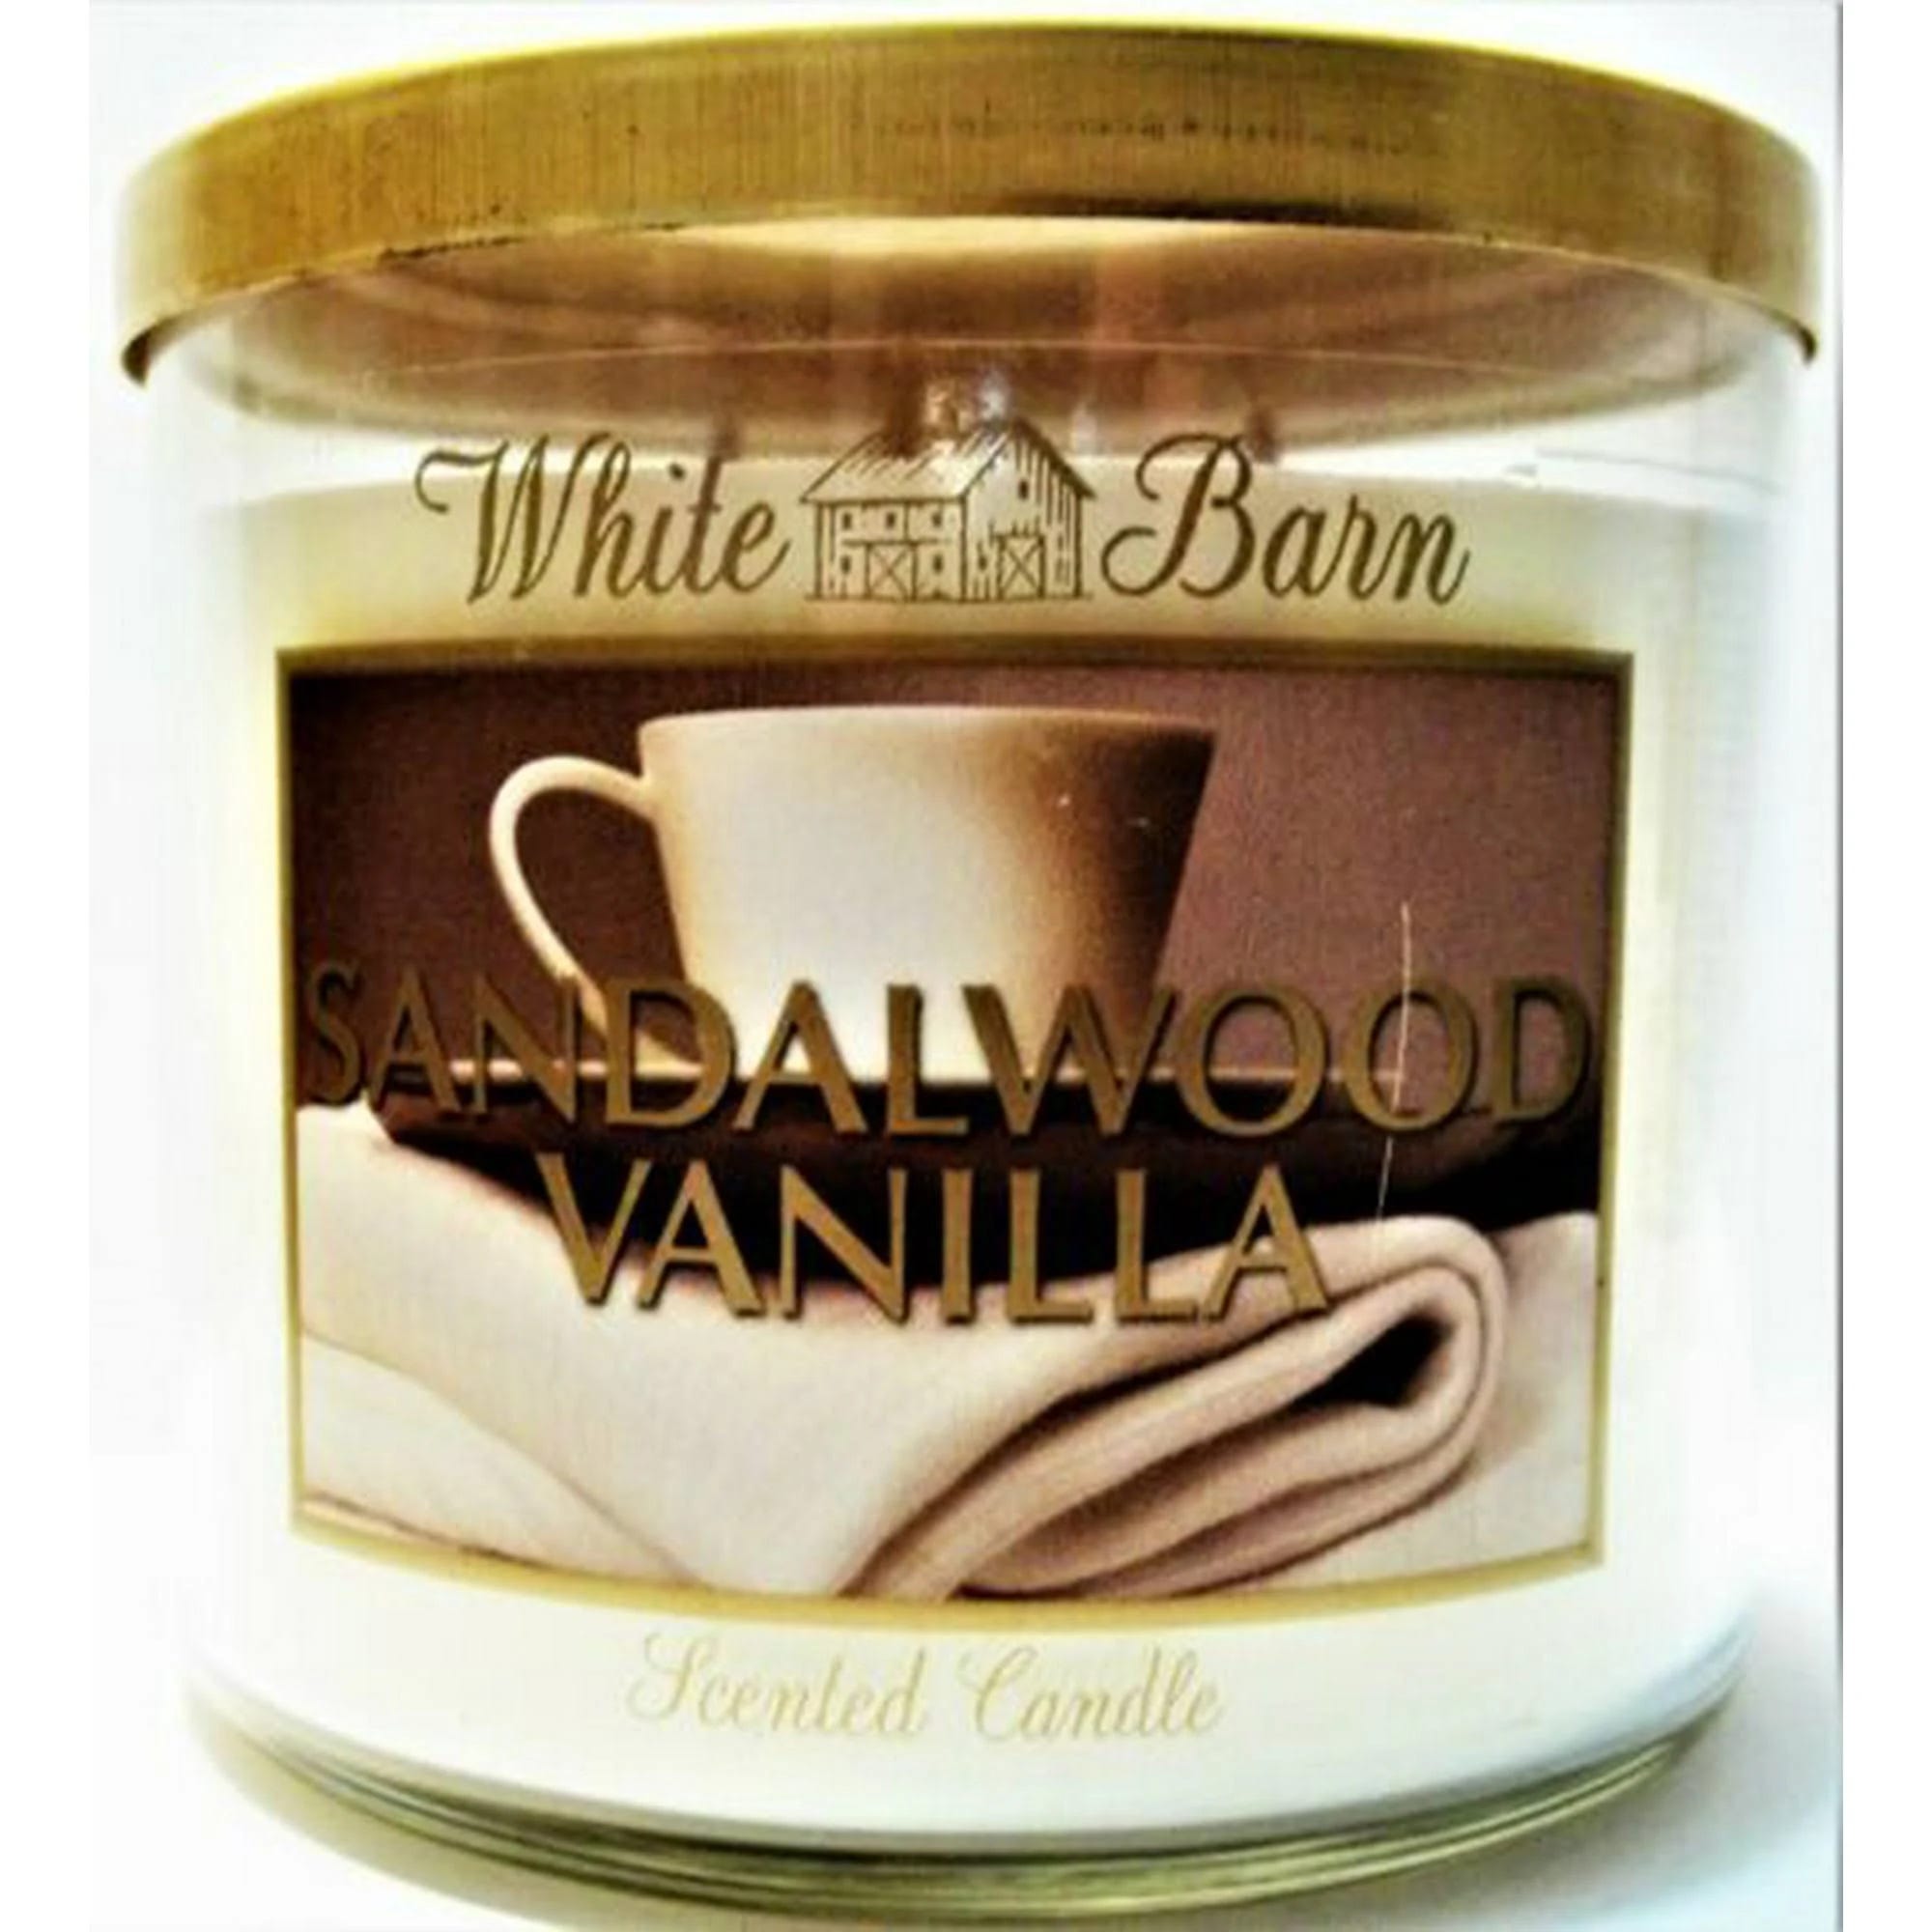 Sandalwood Vanilla Scented White Barn Candle (14.5 oz) | Image